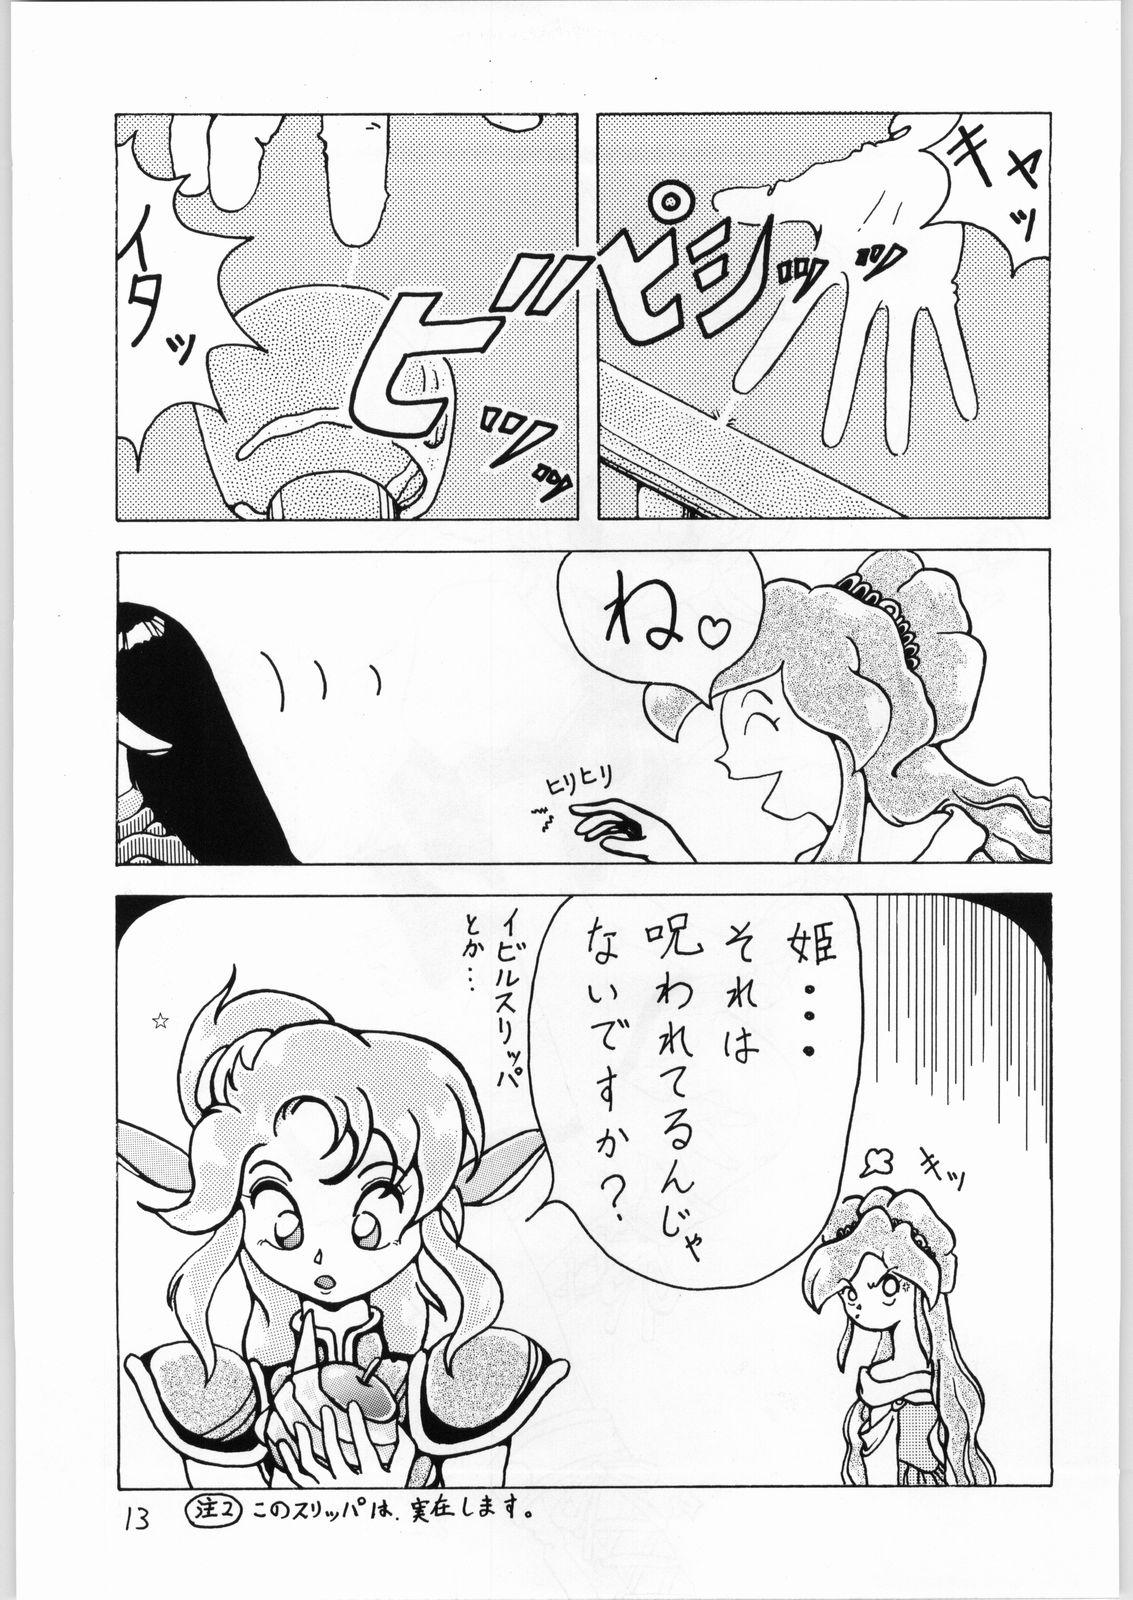 Transsexual Dance of Princess 3 - Sailor moon Tenchi muyo Akazukin cha cha Minky momo Ng knight lamune and 40 Camera - Page 12